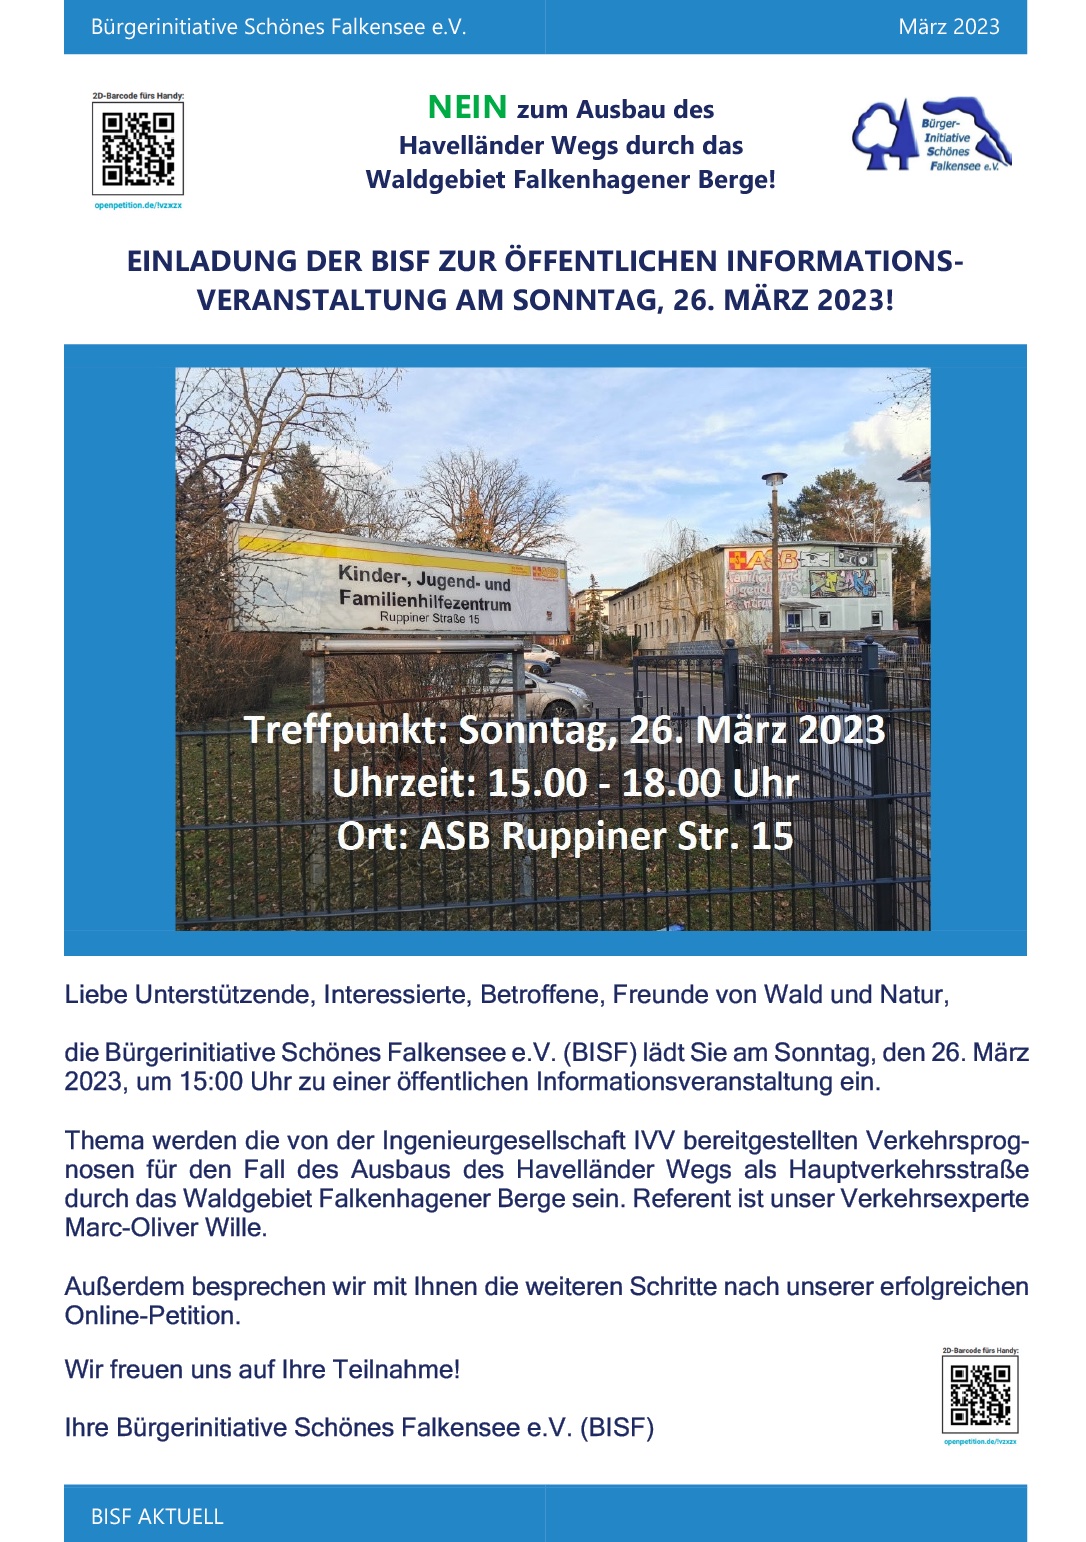 TIPP: Öffentliche Informations-veranstaltung zum Ausbau des Havelländer Weges, 26.03.2023, 15 Uhr